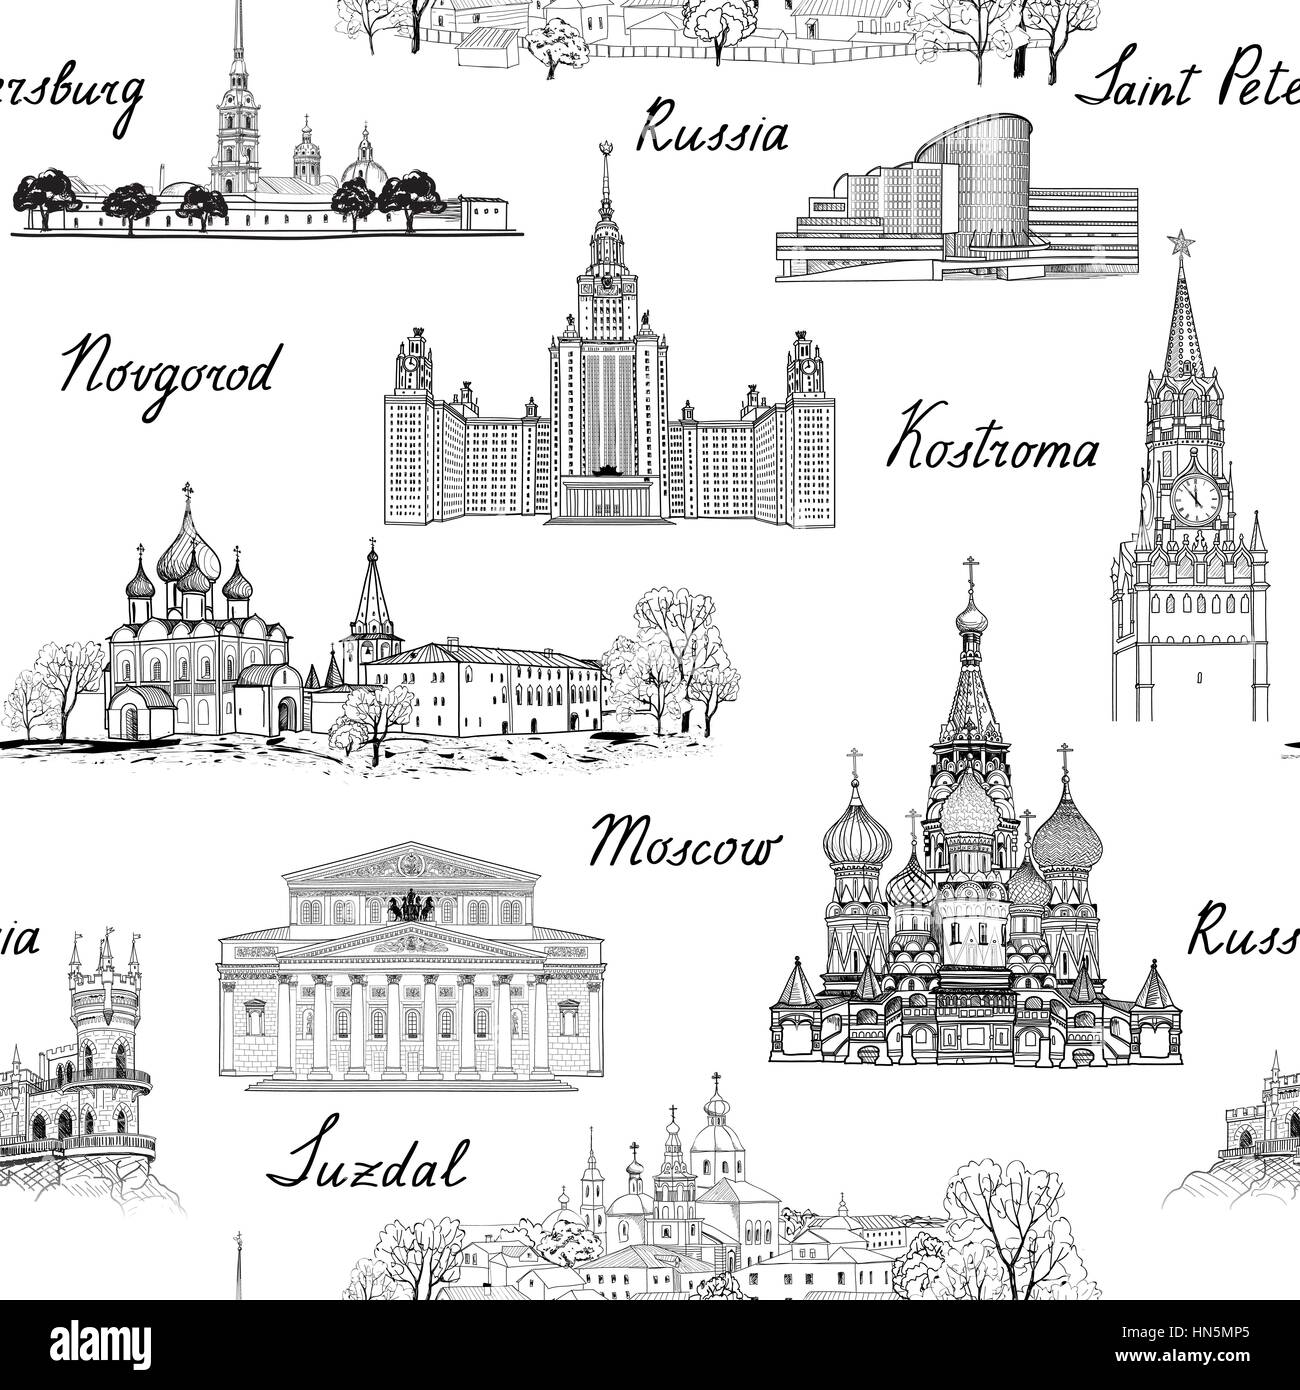 Reisen Russland nahtlose graviert architektonische Muster. berühmte russische Städte und Denkmäler. Wahrzeichen von Moskau, St. Petersburg, Susdal, kolomna und Stock Vektor